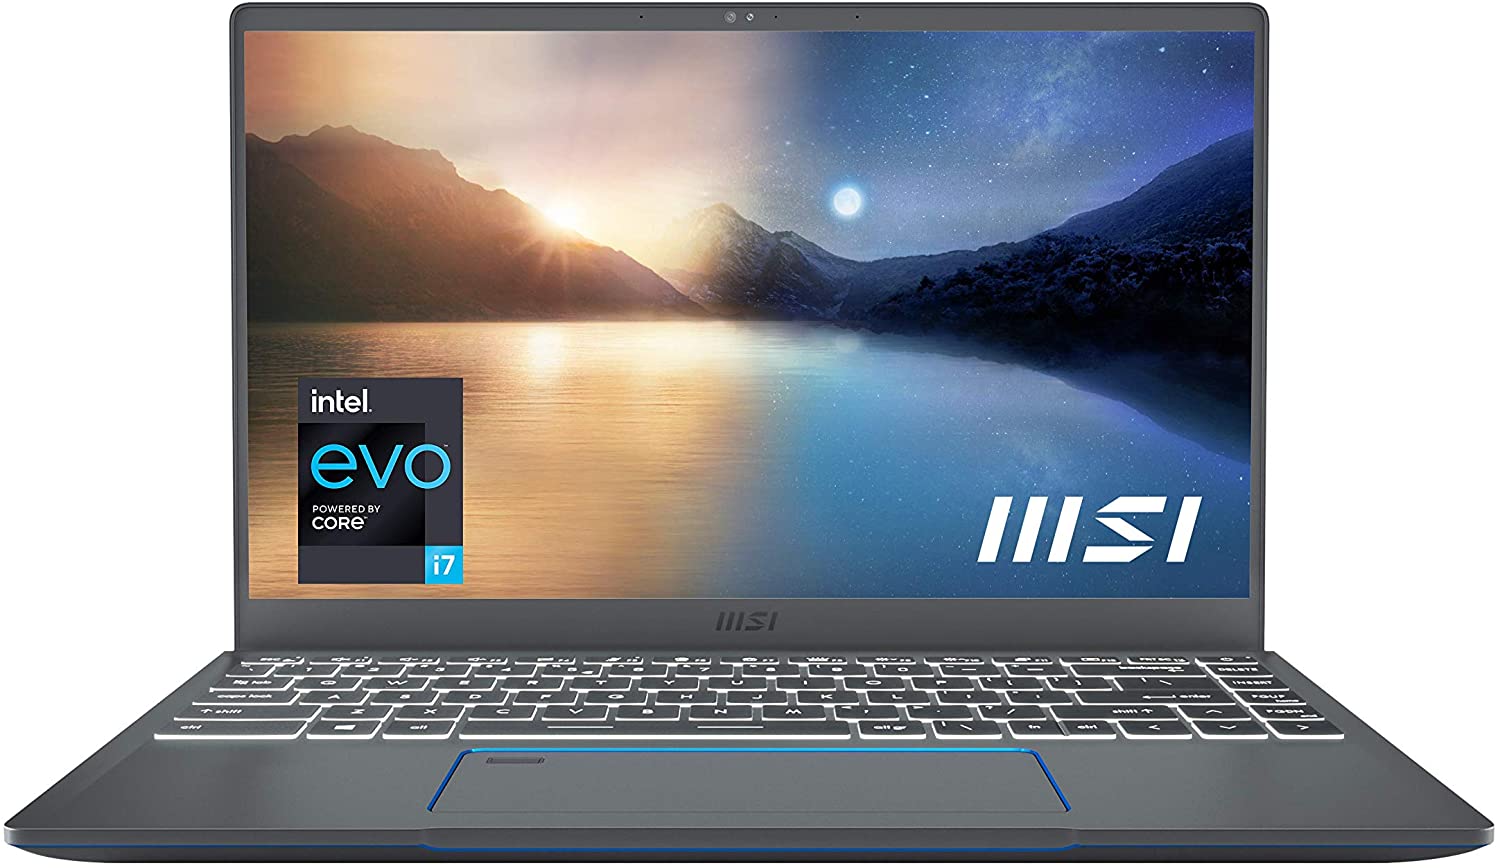 MSI Prestige 14 EVO 012 Laptop: FHD IPS, i7-1185G7, 16GB LPDDR4X, 512GB PCIe SSD, Wi-Fi 6, Thunderbolt 4 @ $850 + F/S